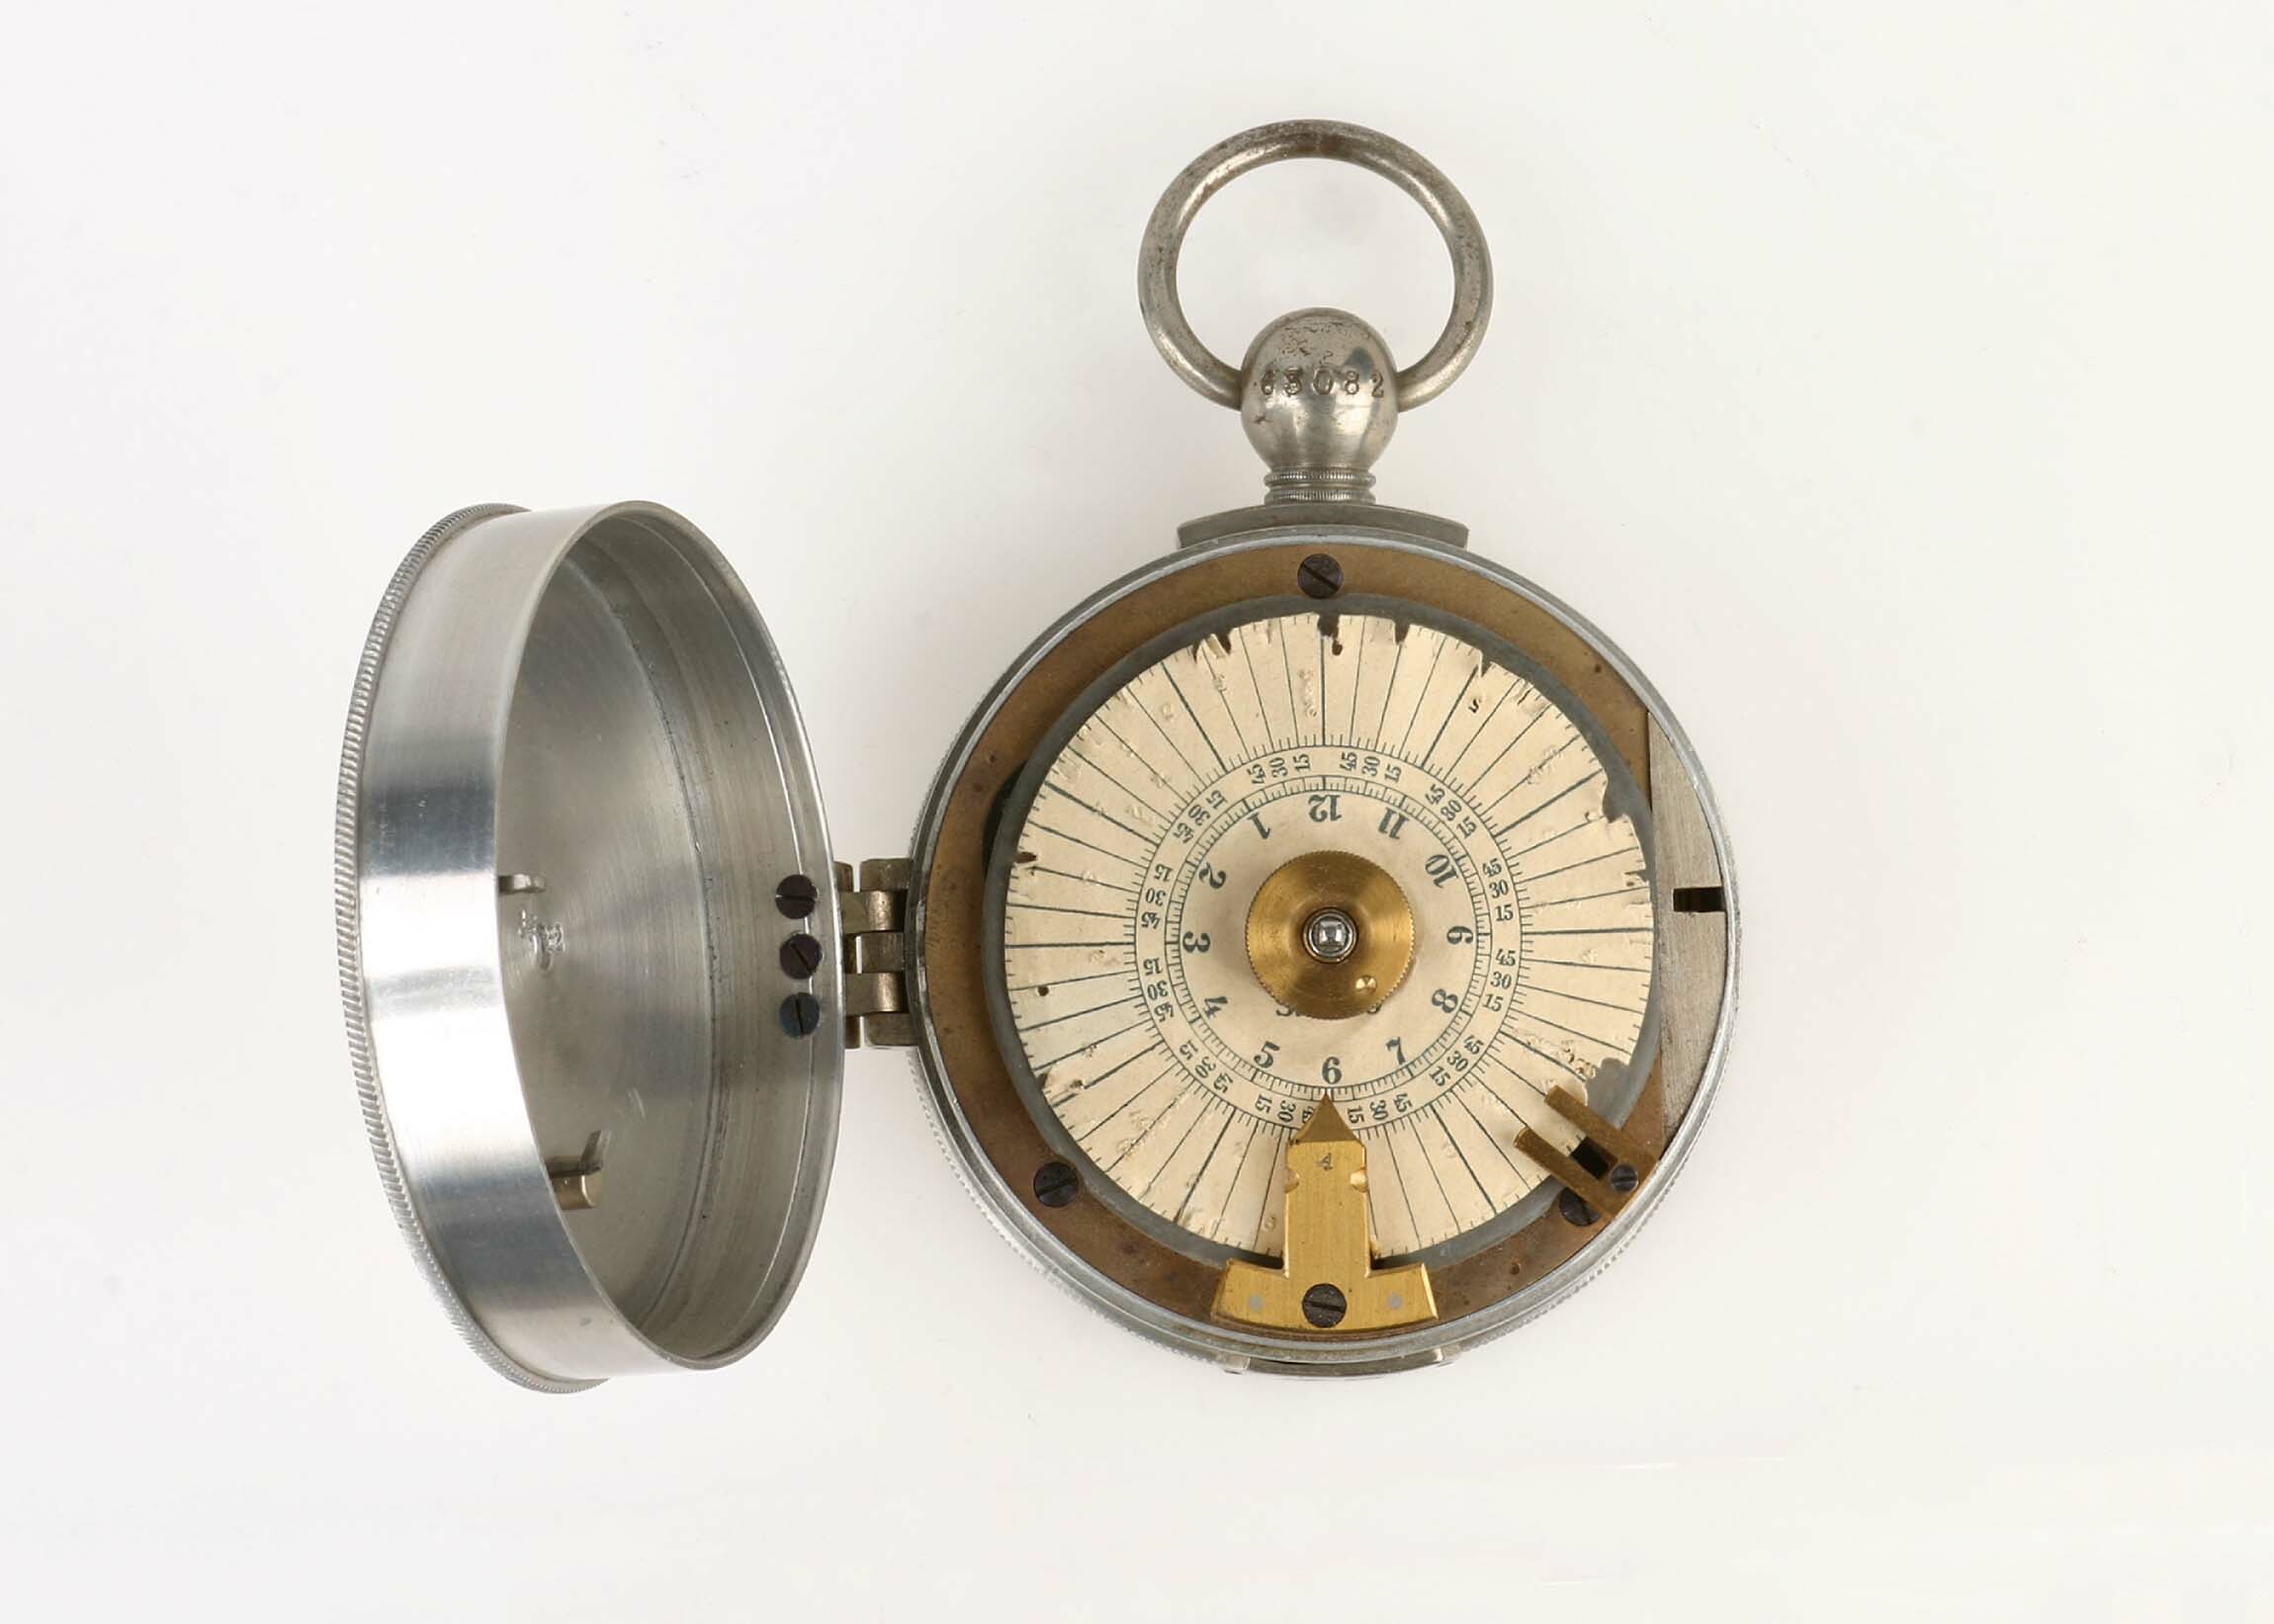 Kontrolluhr ISGUS, Schlenker-Grusen, Schwenningen, um 1930 (Deutsches Uhrenmuseum CC BY-SA)